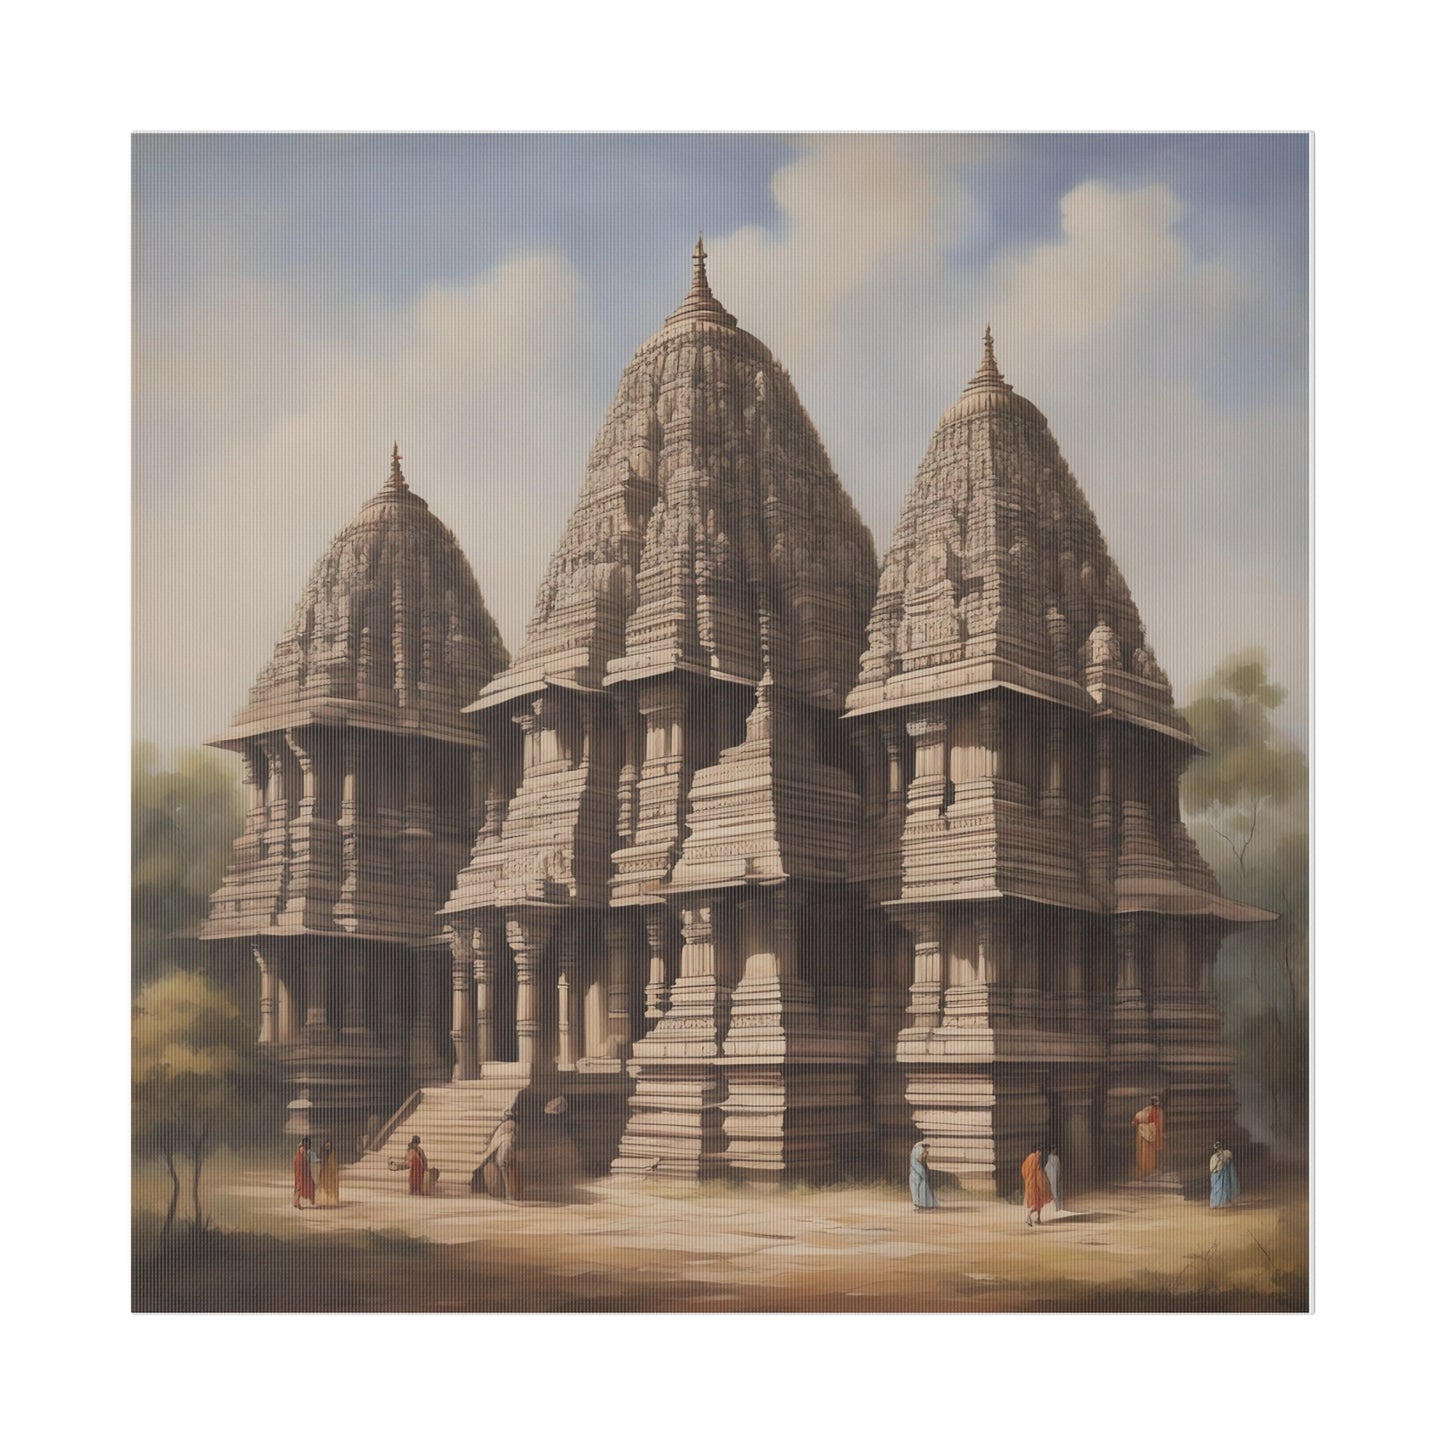 Echoes of Devotion: Ancient Temple